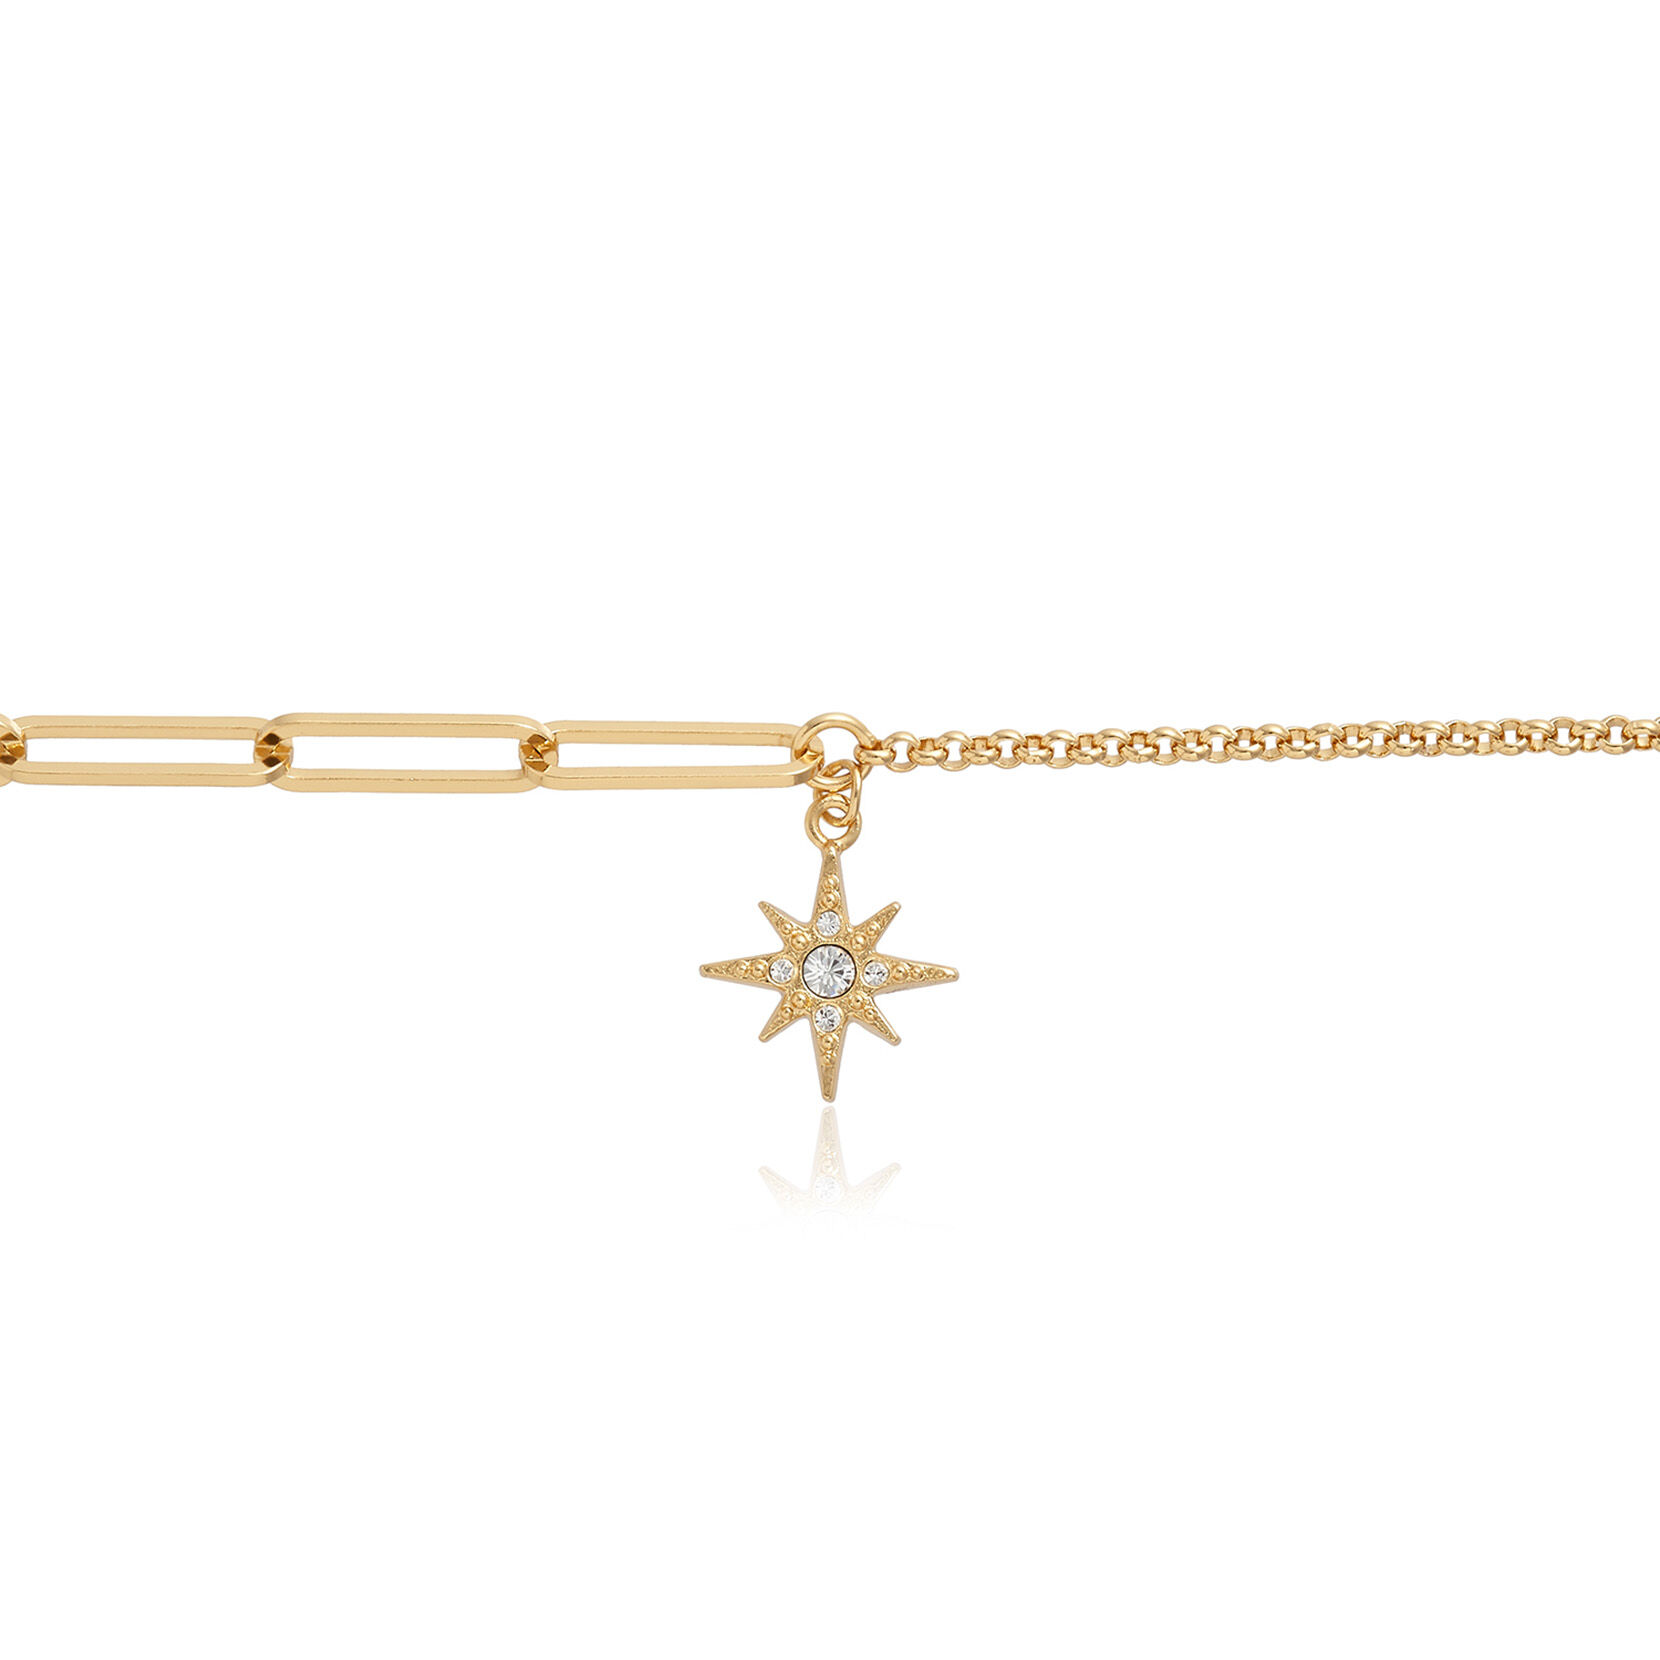 Celestial Gold North Star Mismatch Bracelet